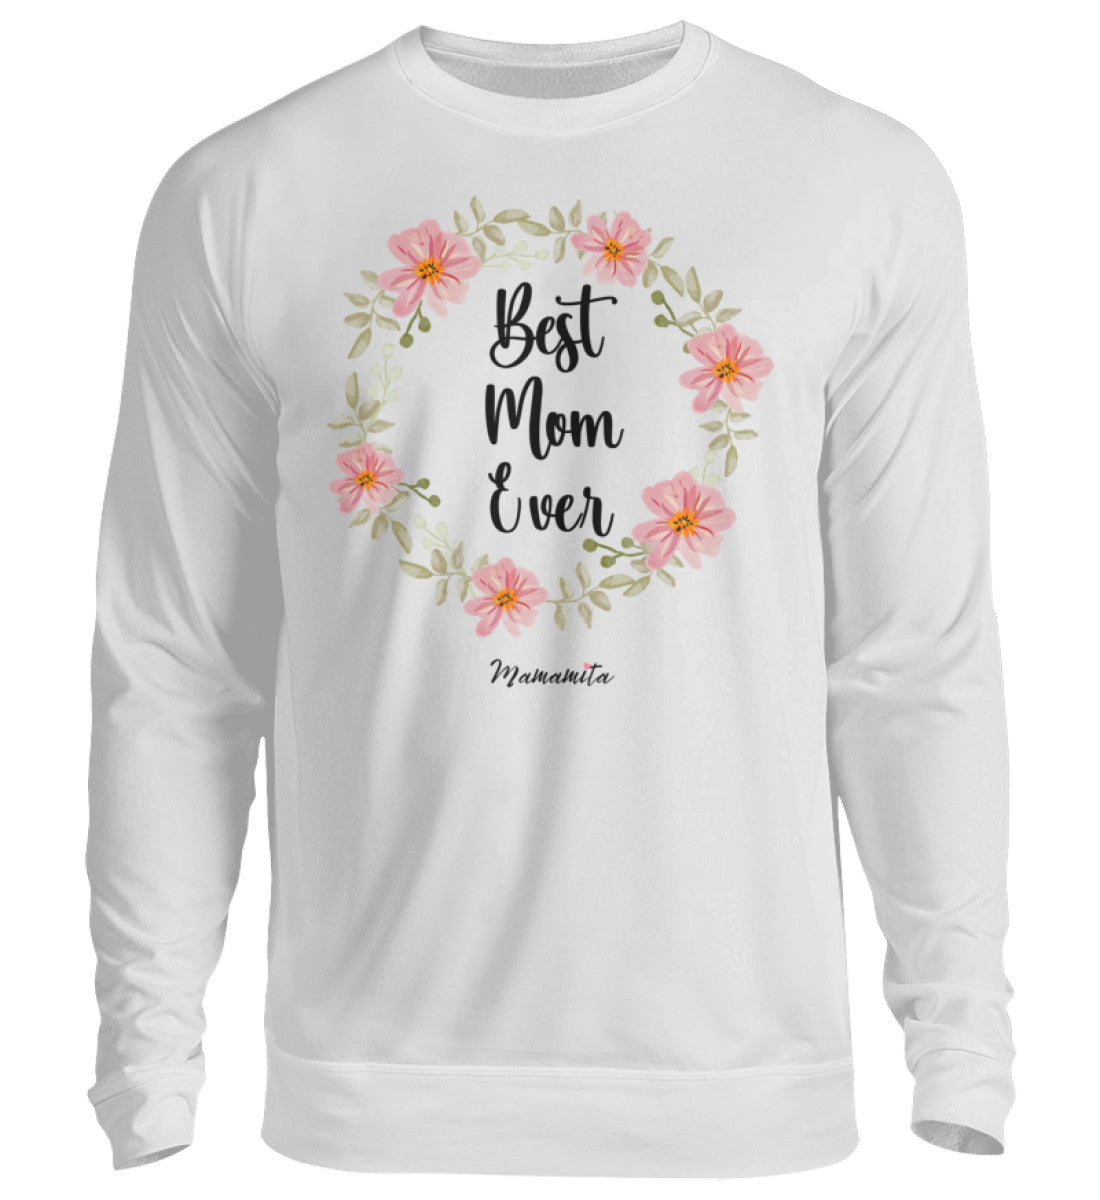 Sweatshirt best mom ever 